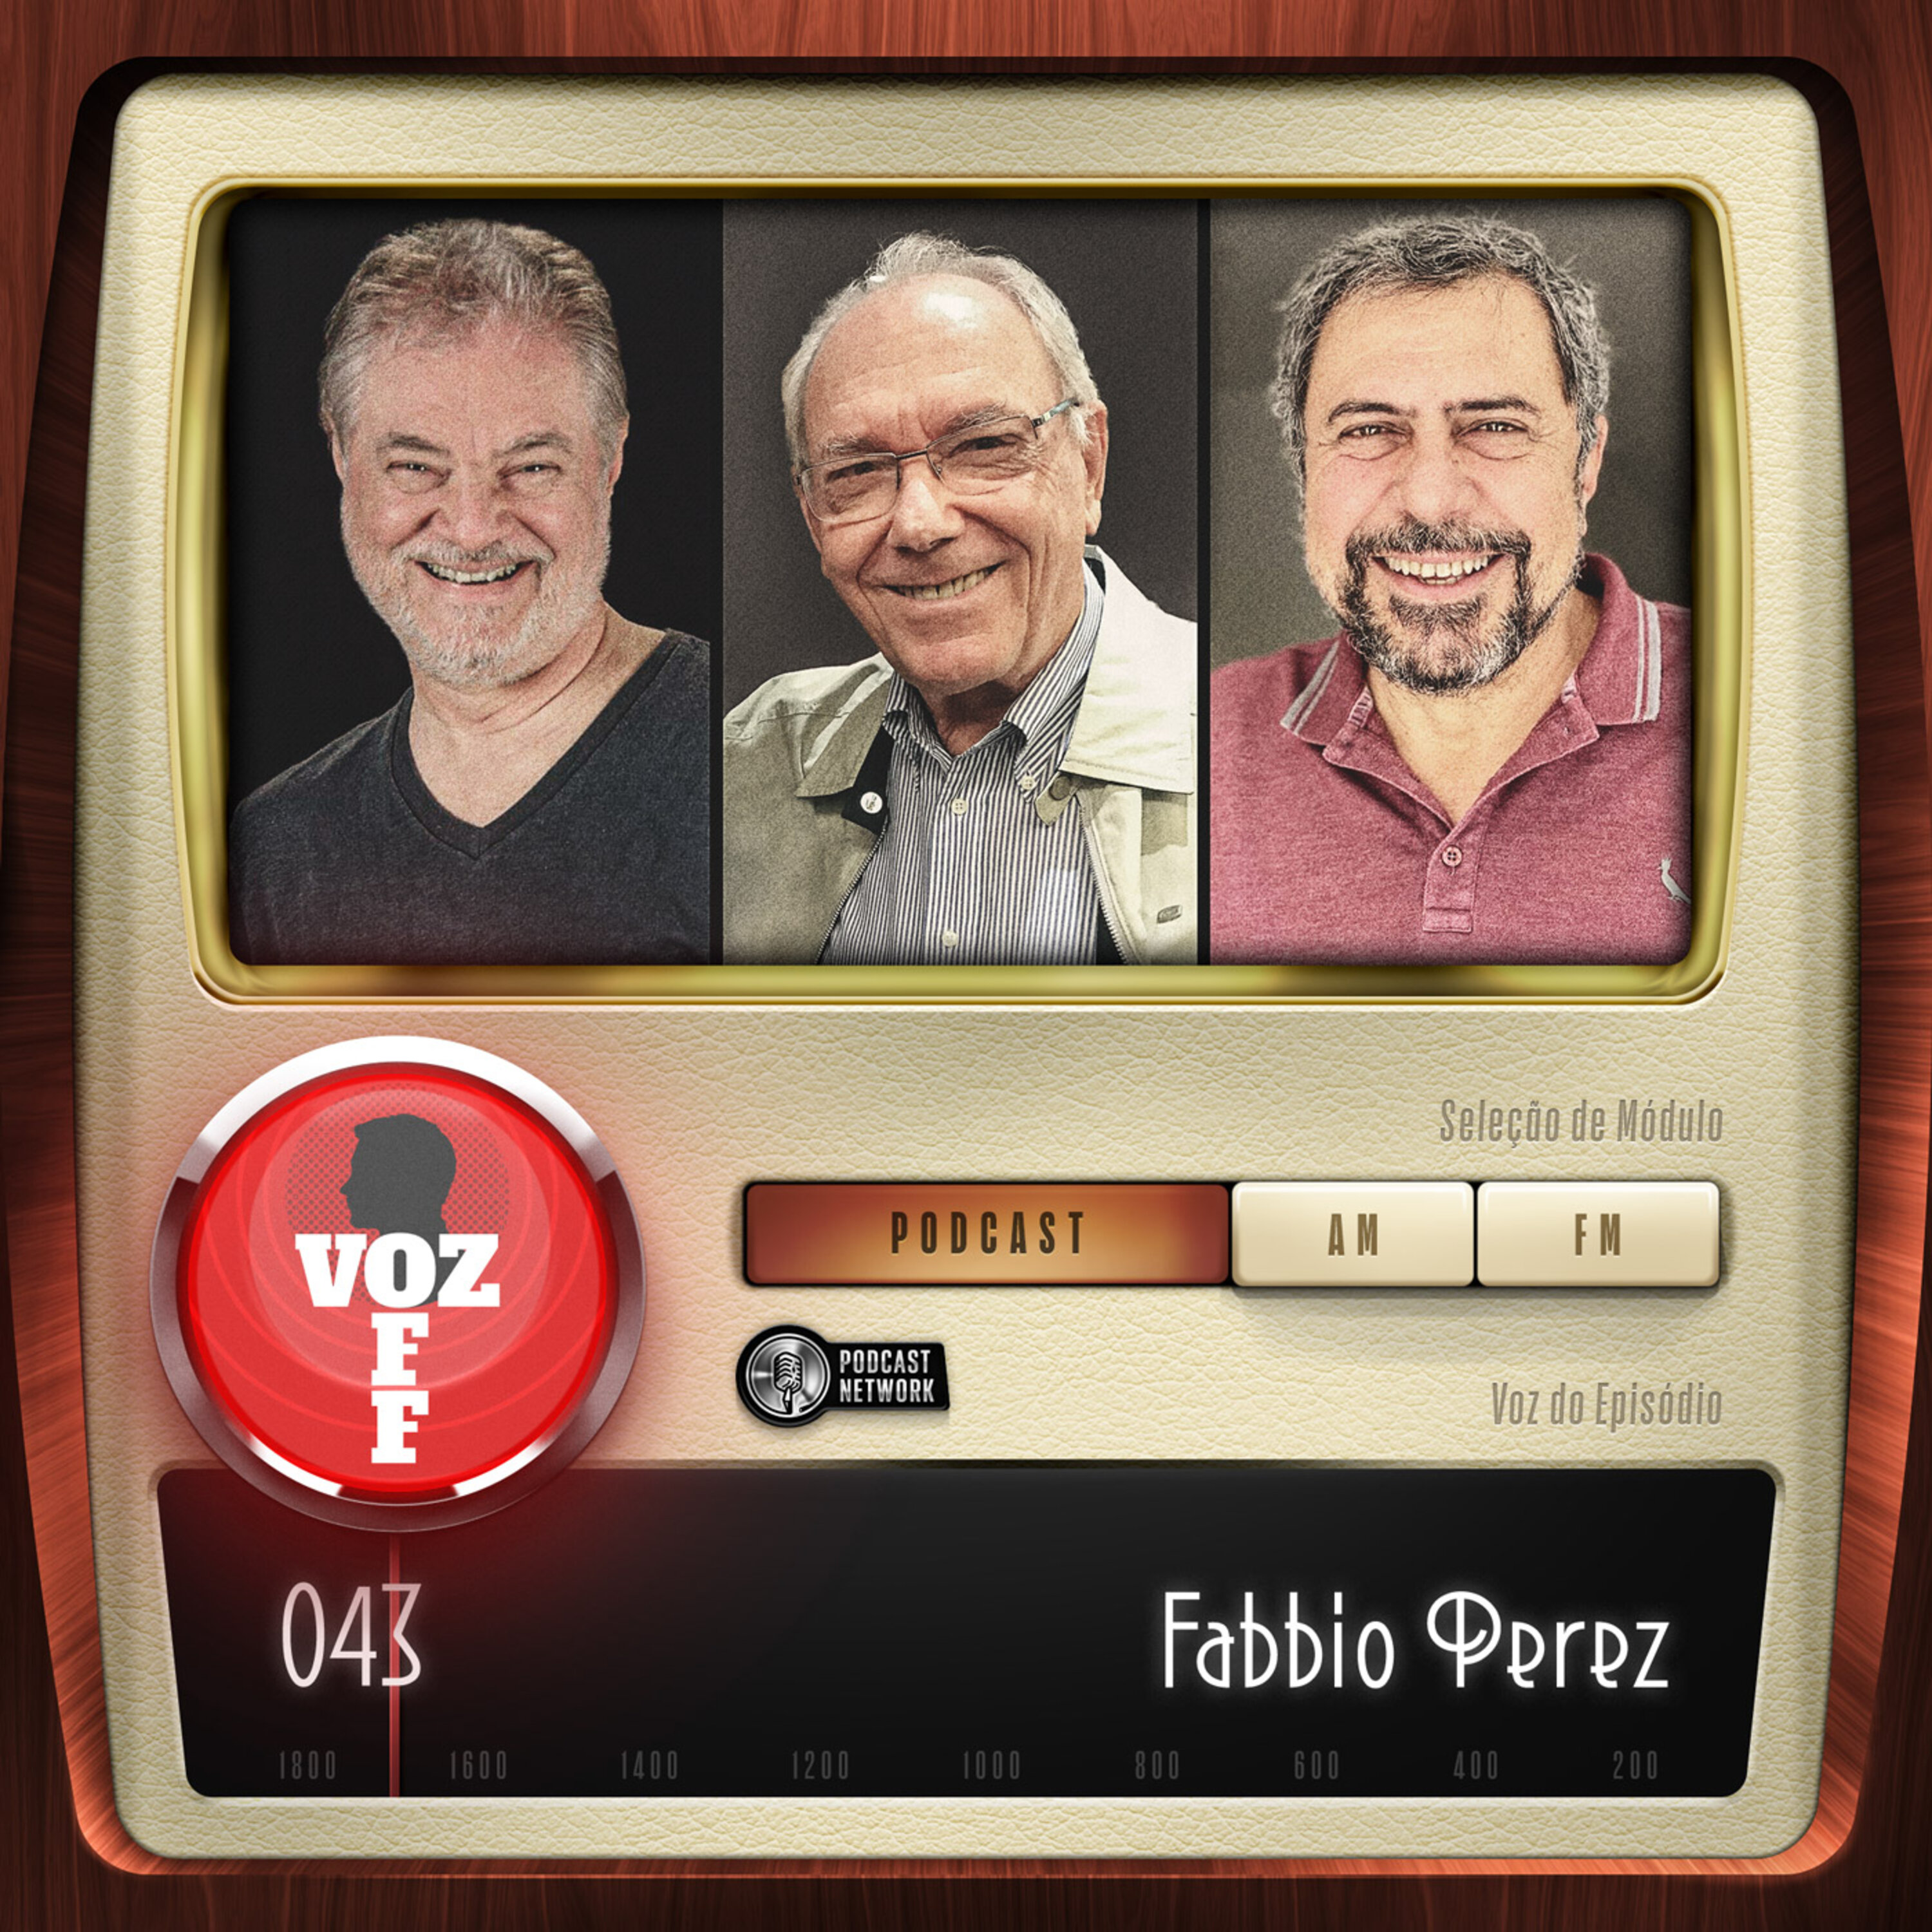 VOZ 0FF 043 - Fabbio Perez